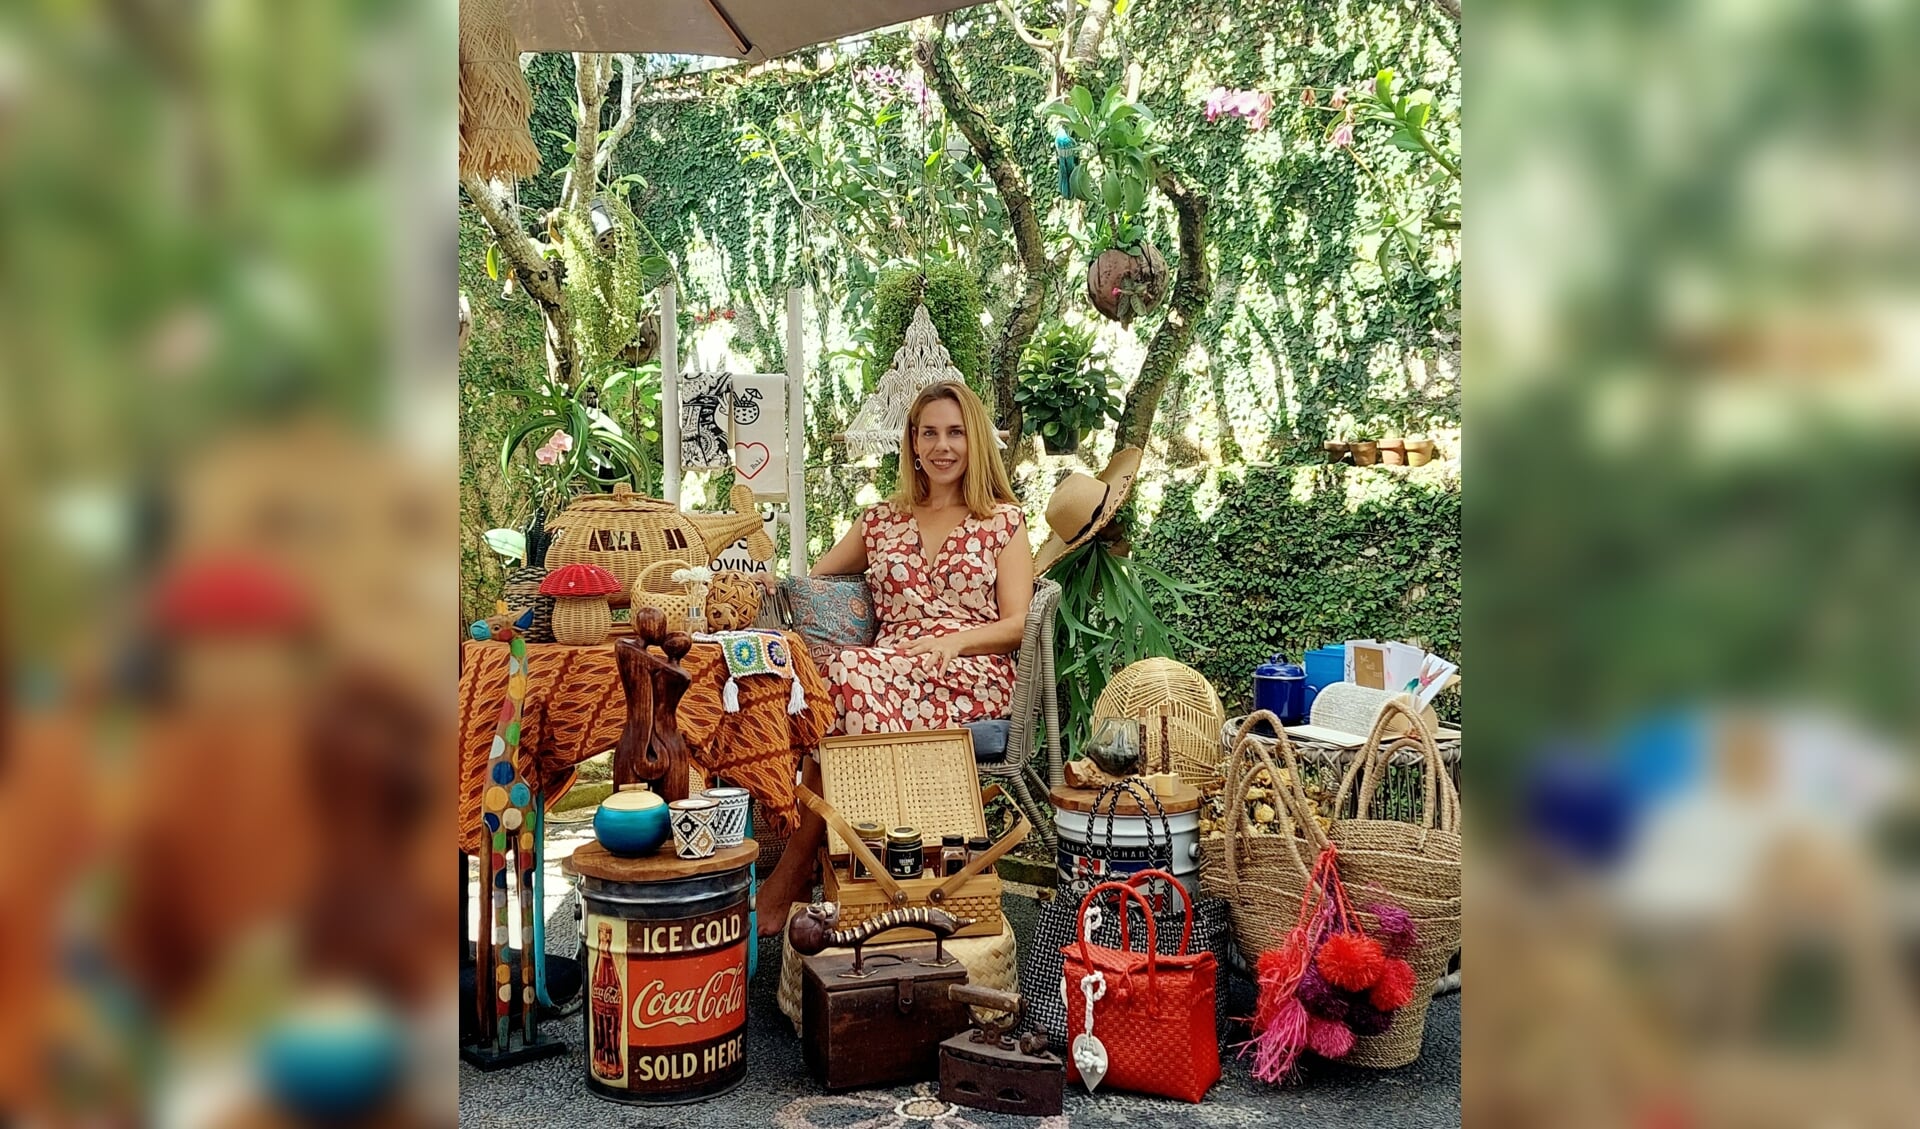 Nicoline stelt pakketten samen van mooie producten en helpt hiermee de bevolking op Bali aan een inkomen. Foto: Eigen foto